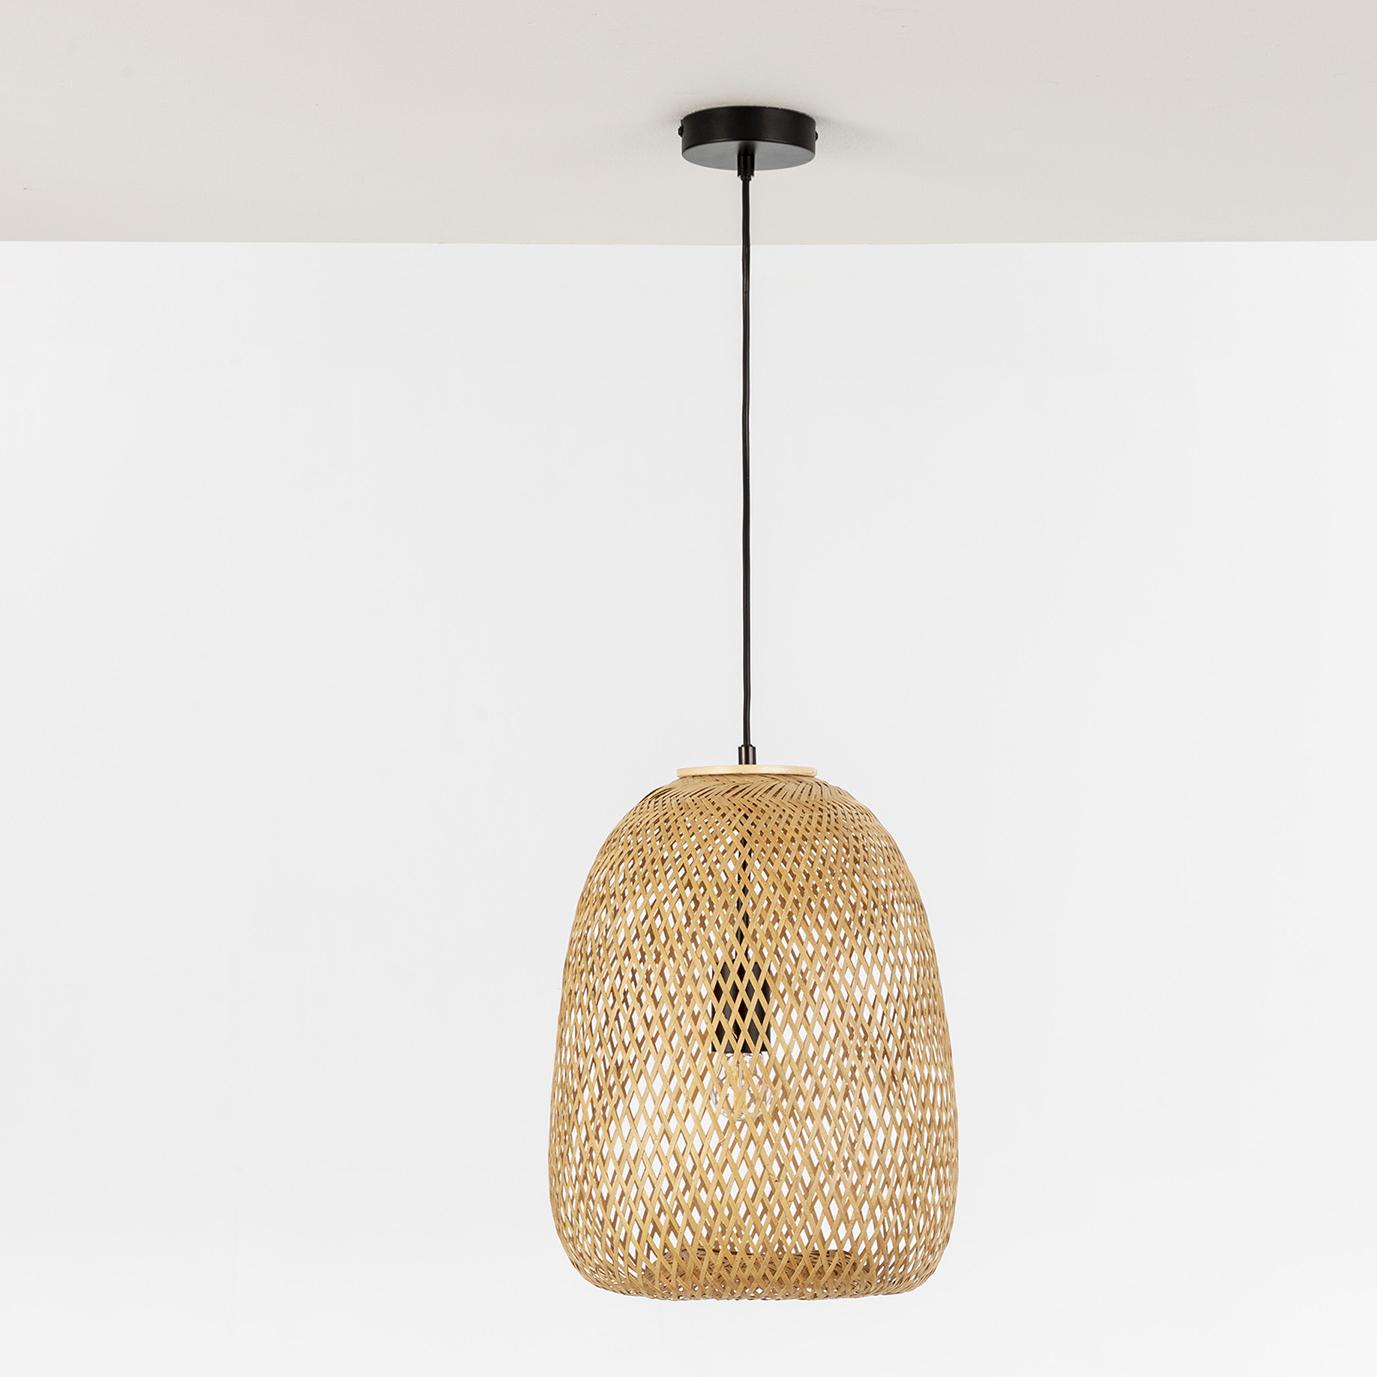 Lámpara de techo Yumei de Bambú, diametro 30 cm